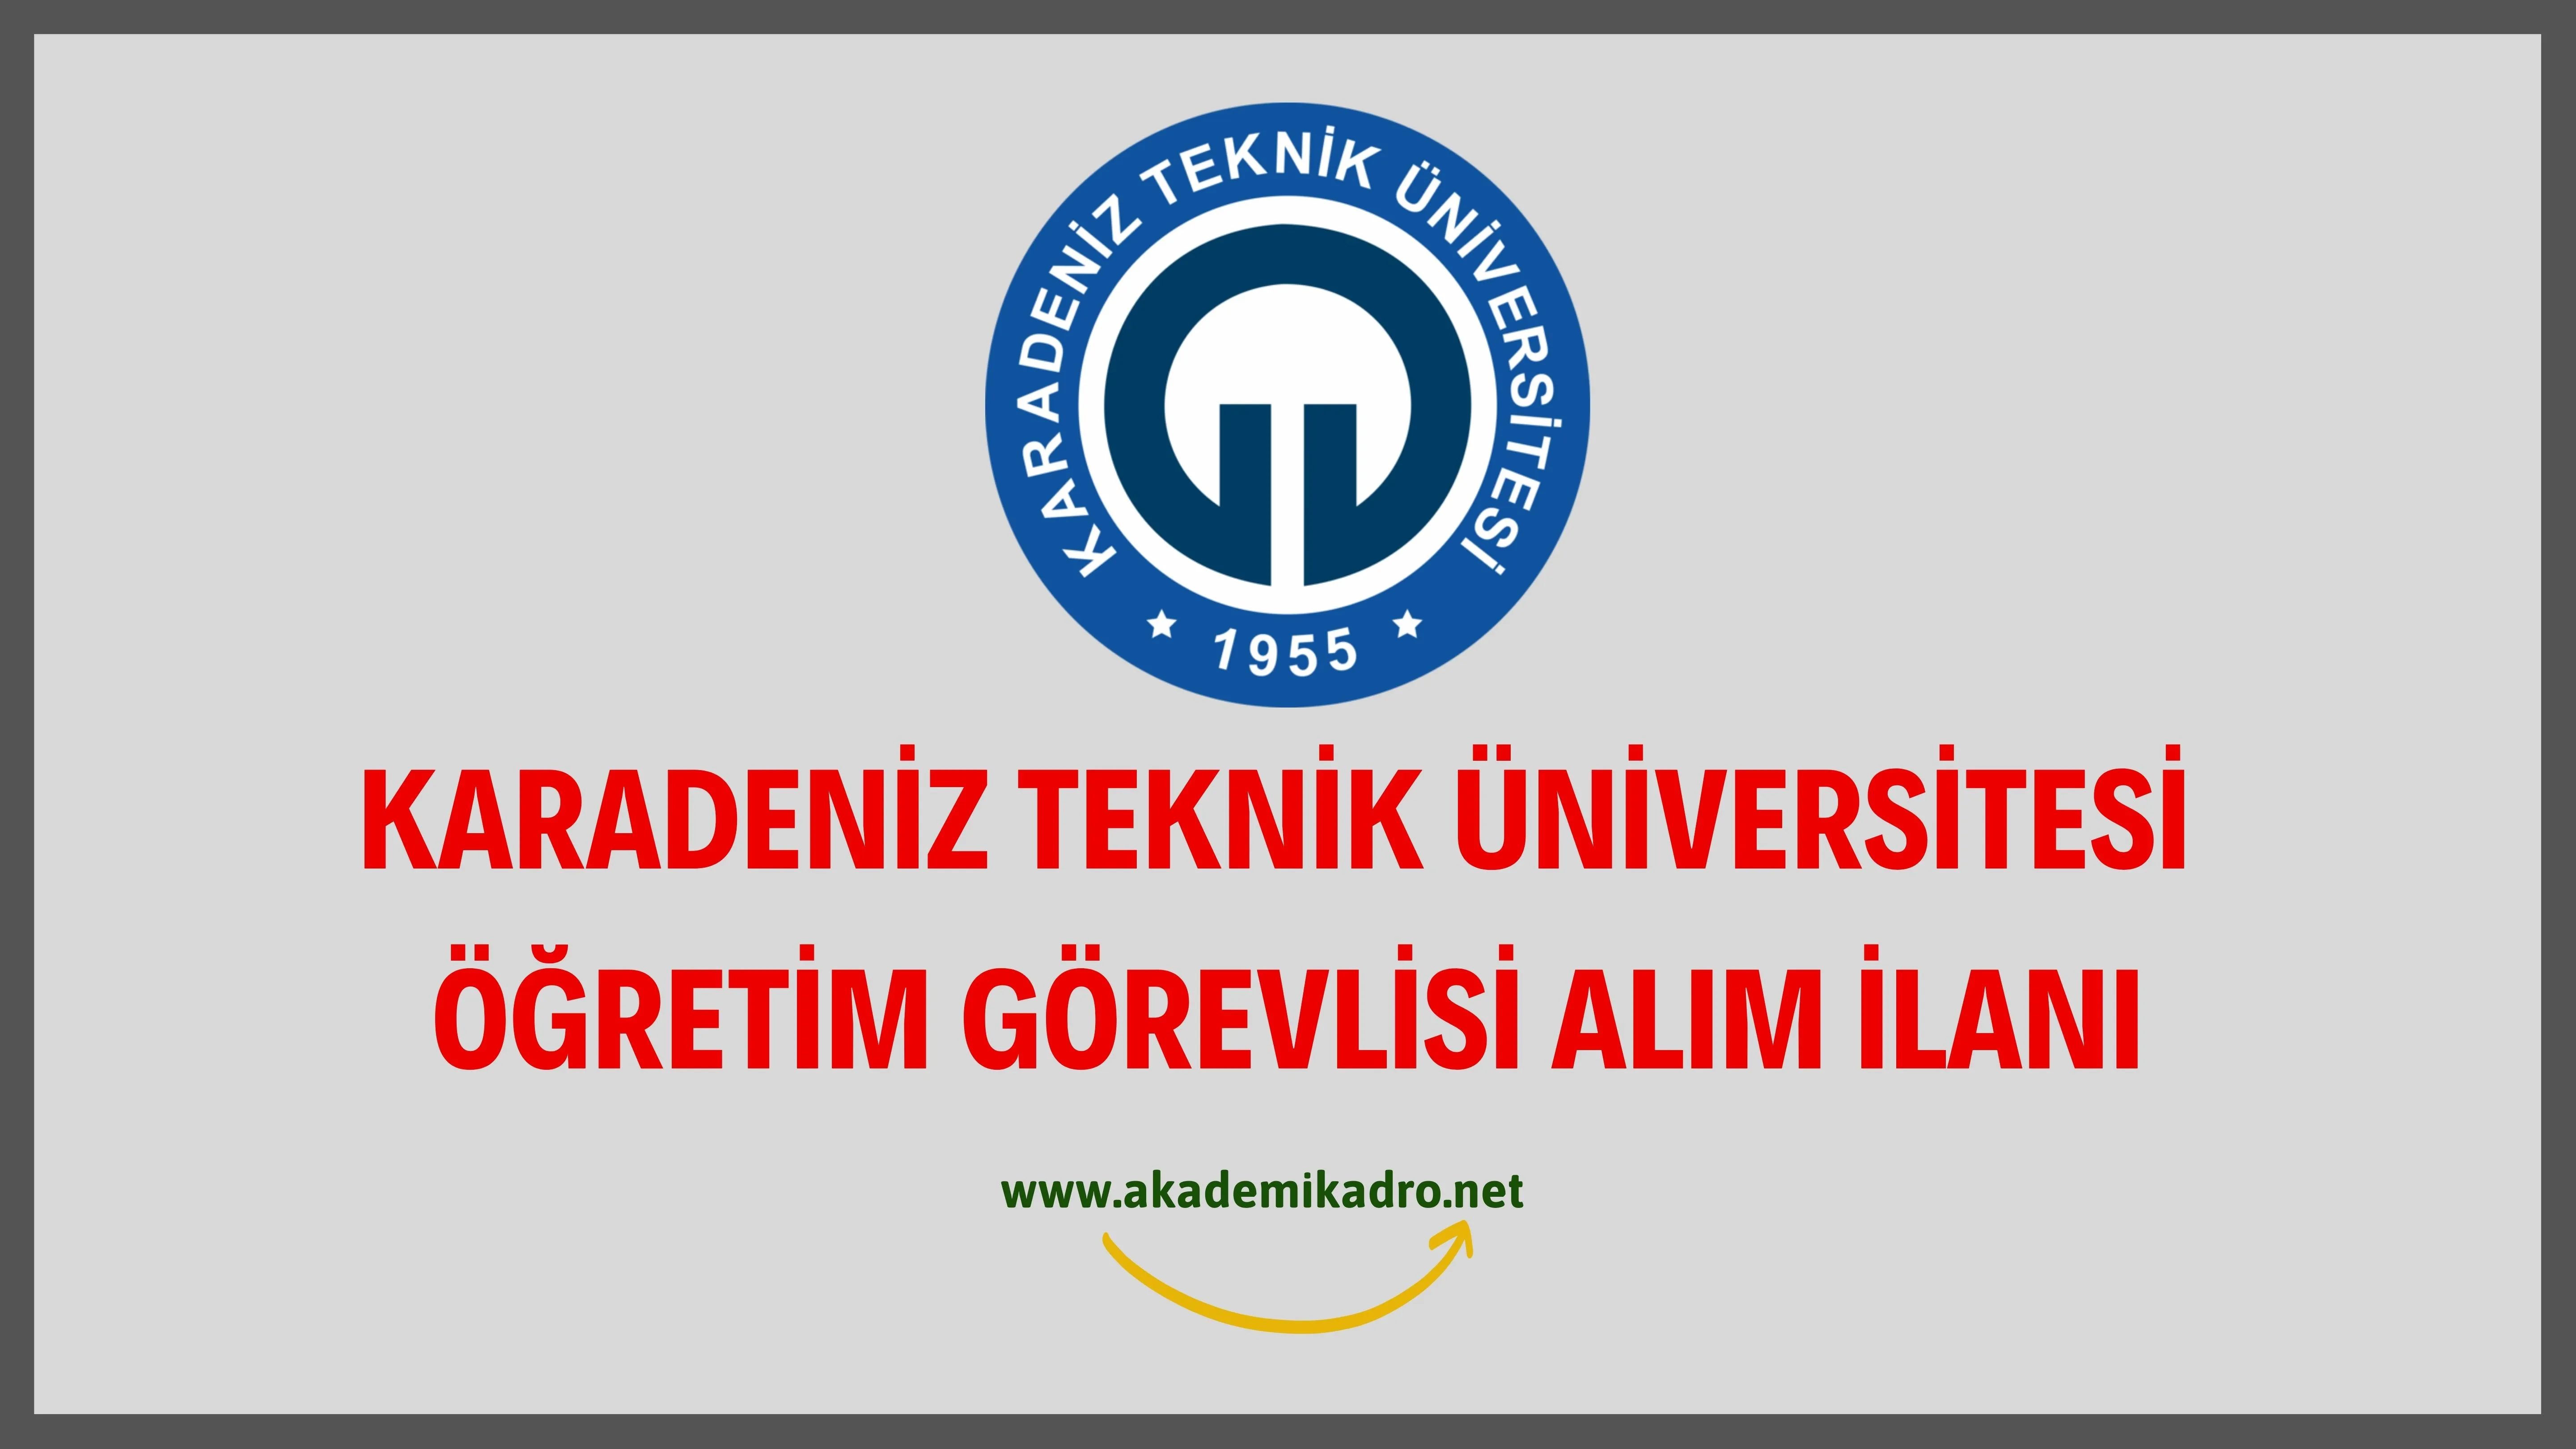 Karadeniz Teknik Üniversitesi 4 Öğretim Görevlisi alacaktır. Son başvuru tarihi 09 Eylül 2022